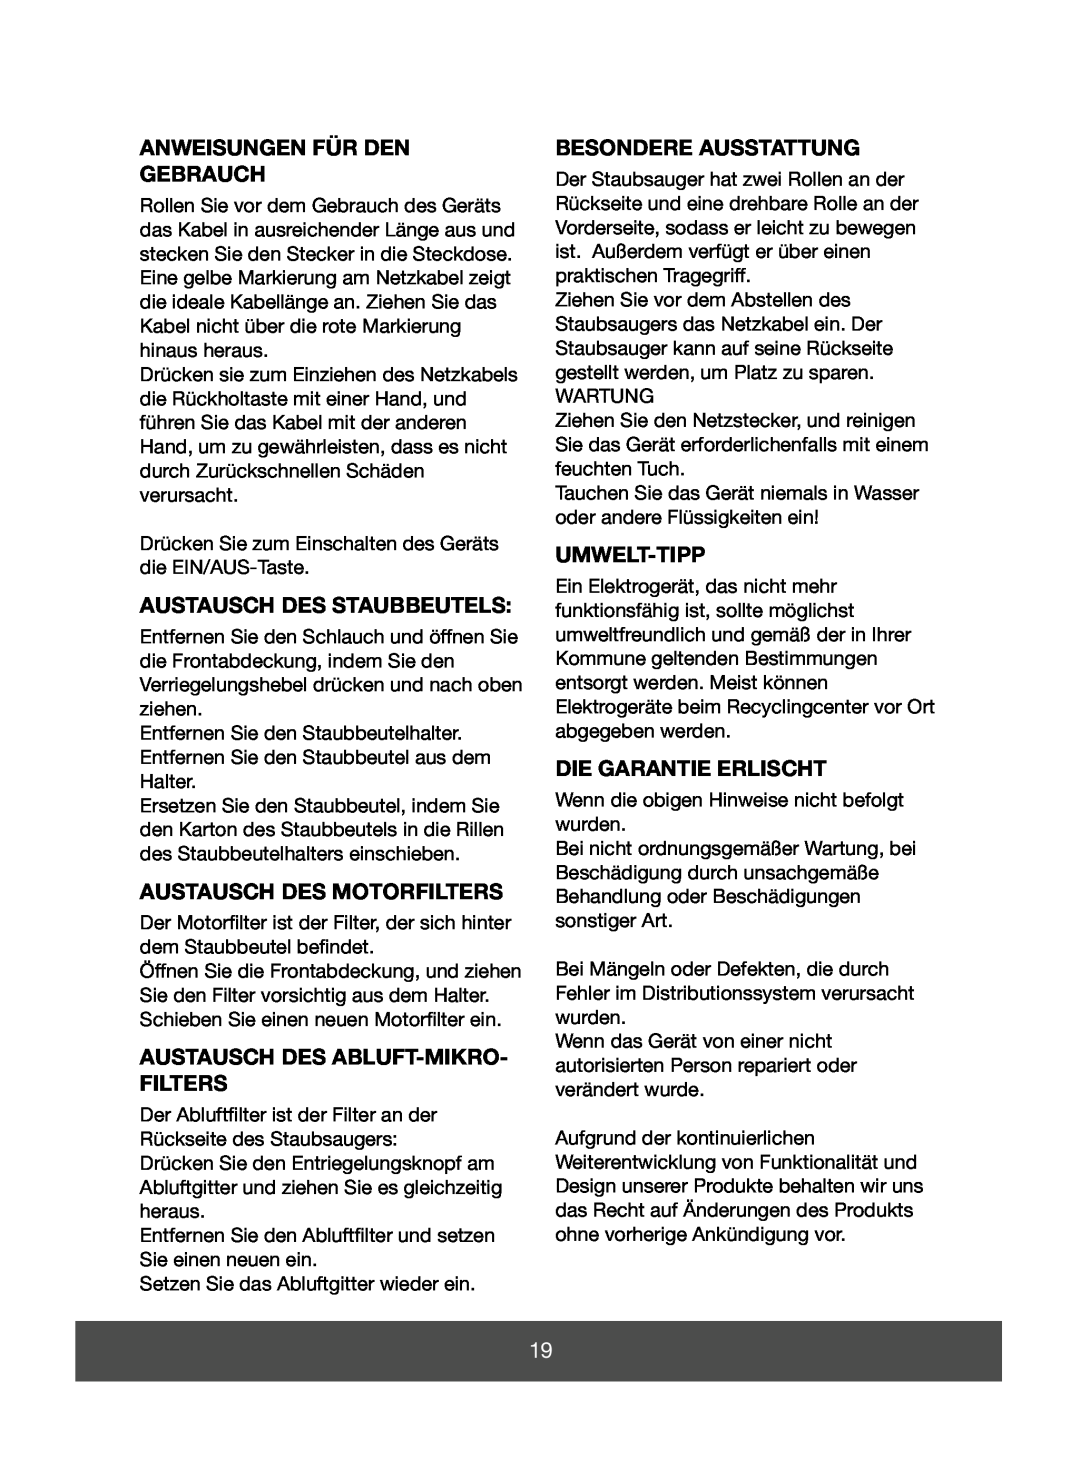 Melissa 640-123 manual Anweisungen Für Den Gebrauch, Austausch Des Staubbeutels, Austausch Des Motorfilters, Umwelt-Tipp 